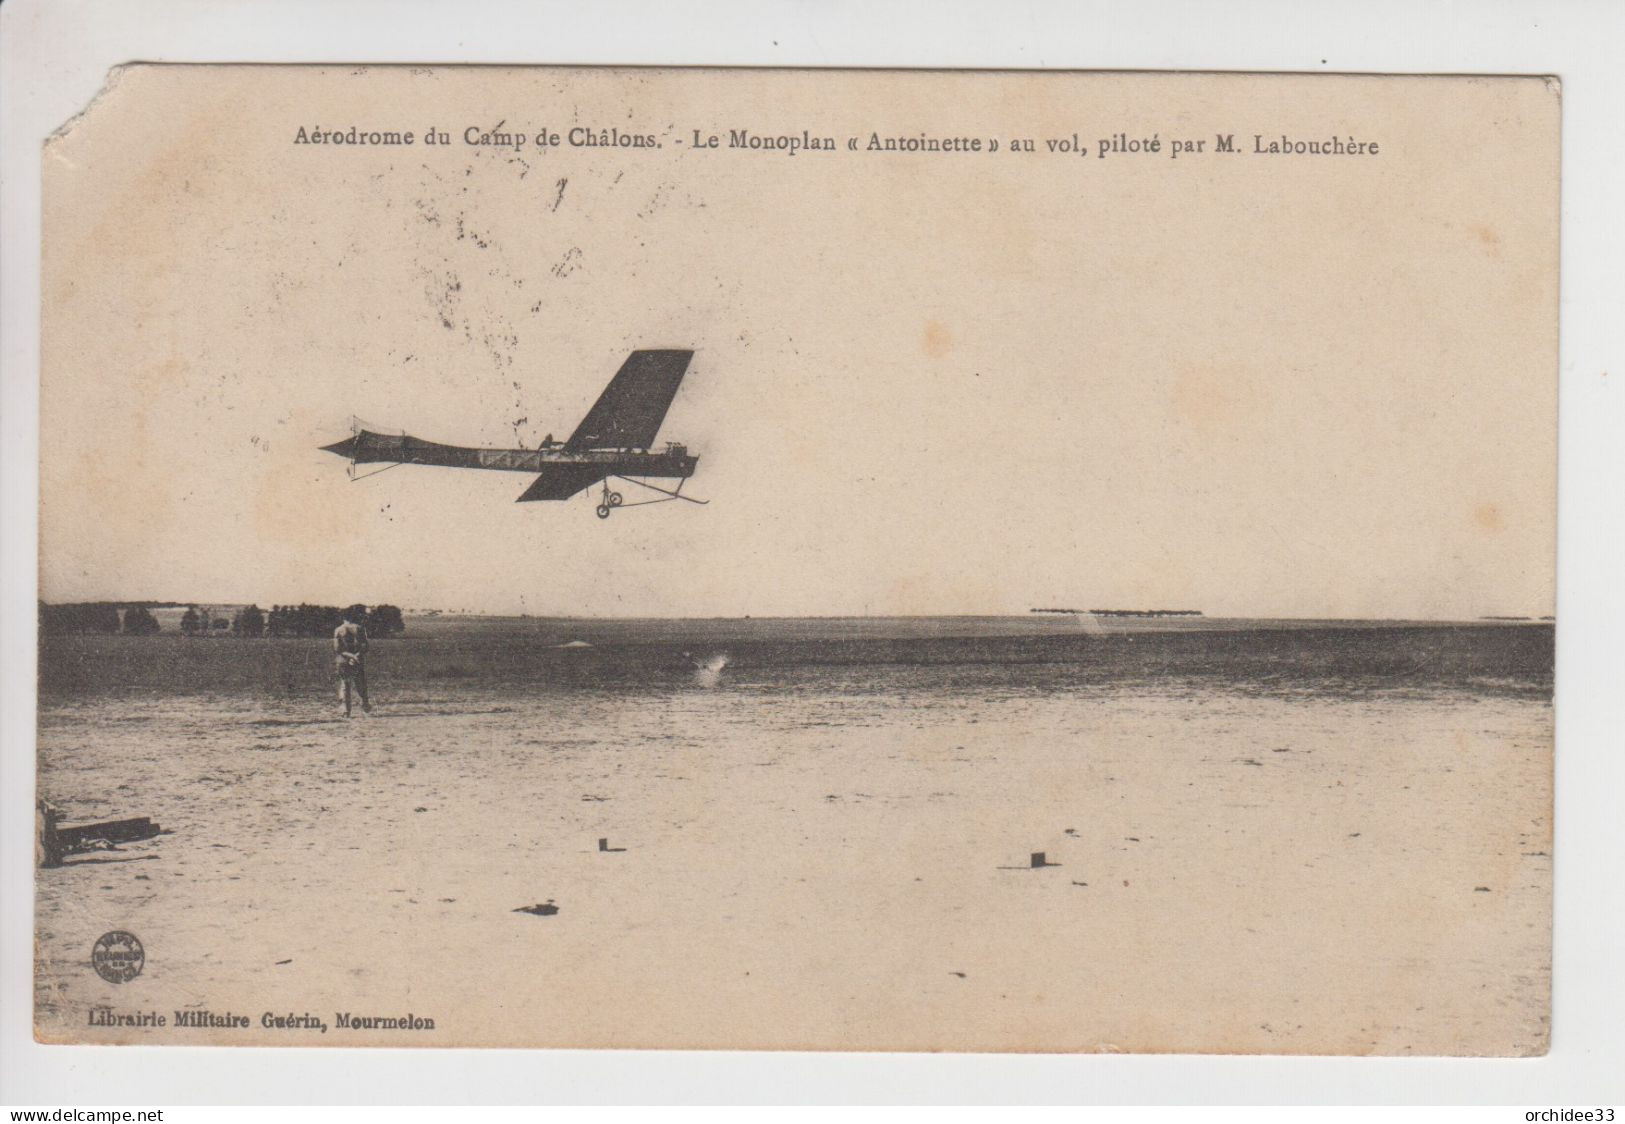 CPA Aérodrome Du Camp De Châlons - Le Monoplan "Antoinette" Au Vol, Piloté Par M. Labouchère - Chalon Sur Saone